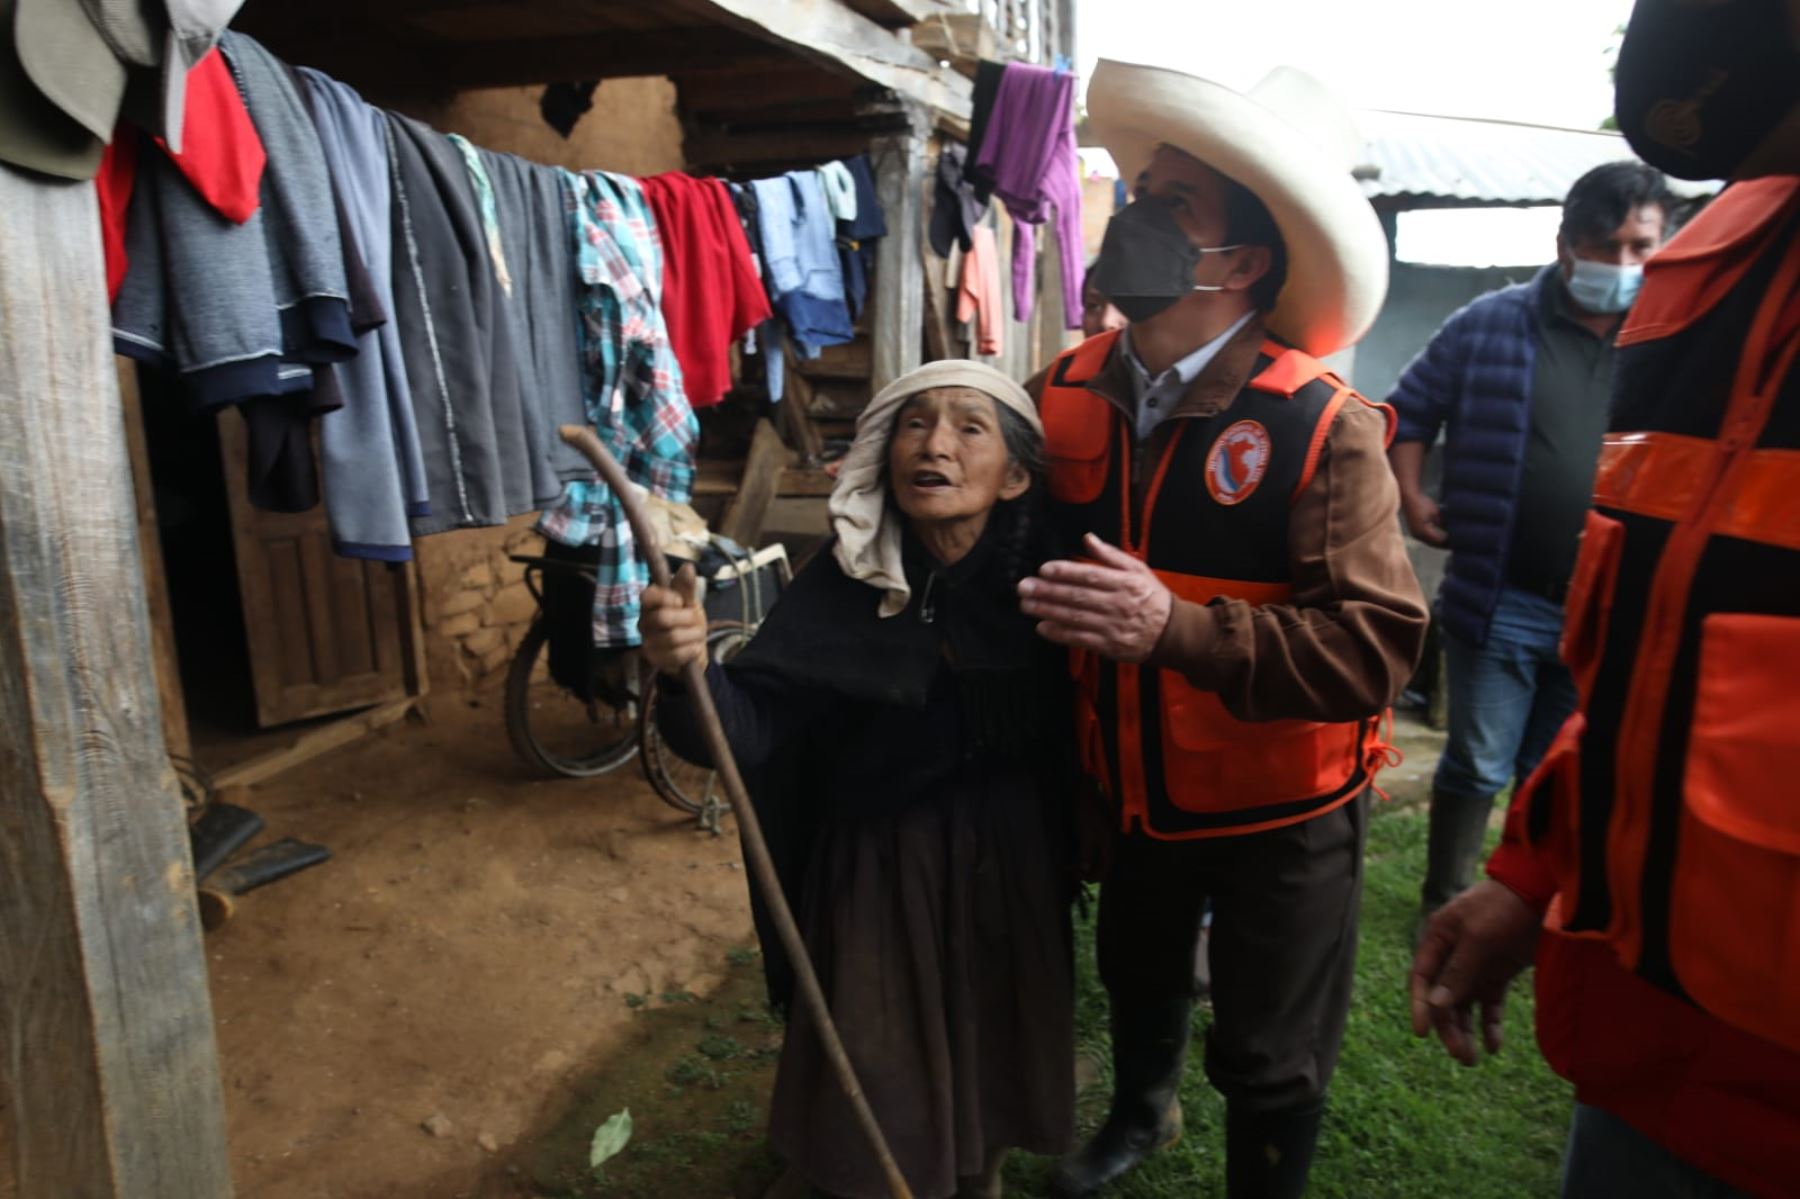 El presidente Pedro Castillo se encuentra en la localidad La Jalca Grande, en Amazonas, realizando la inspección a las zonas afectadas por el sismo y brindando apoyo a la población afectada. Foto: ANDINA/Prensa Presidencia